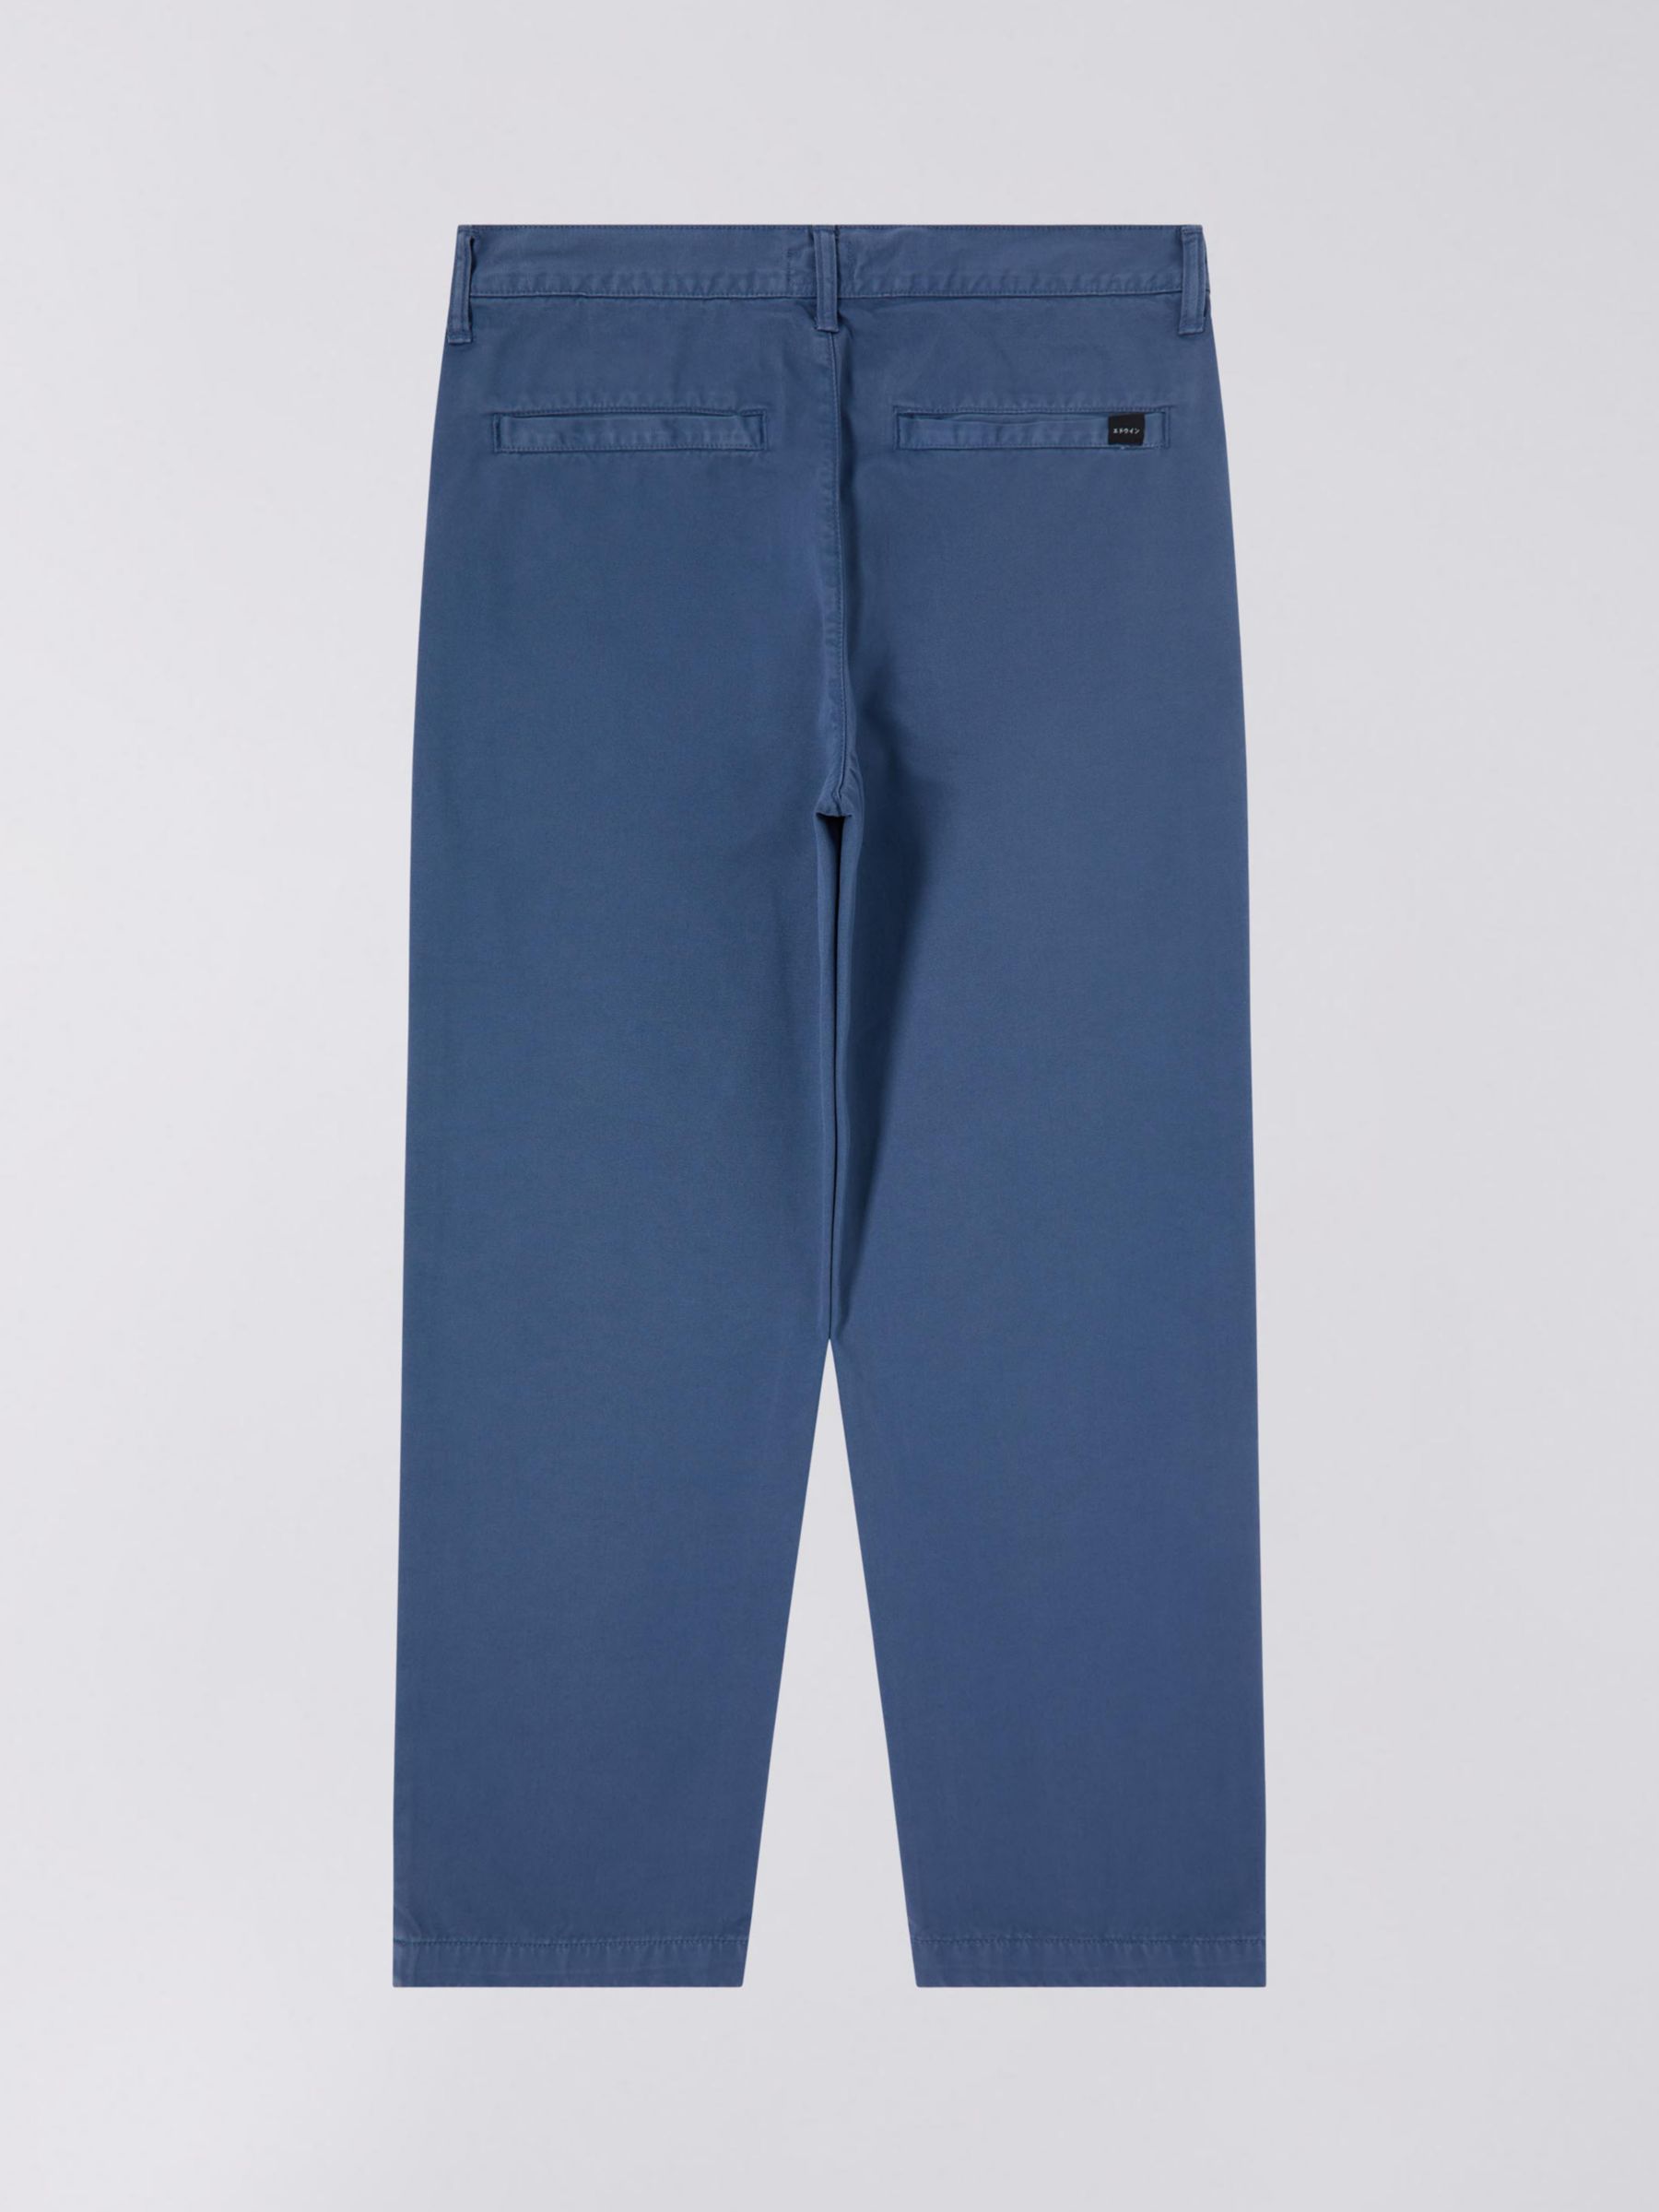 Edwin Edwin Jaga Loose Trousers, Blue, 38R